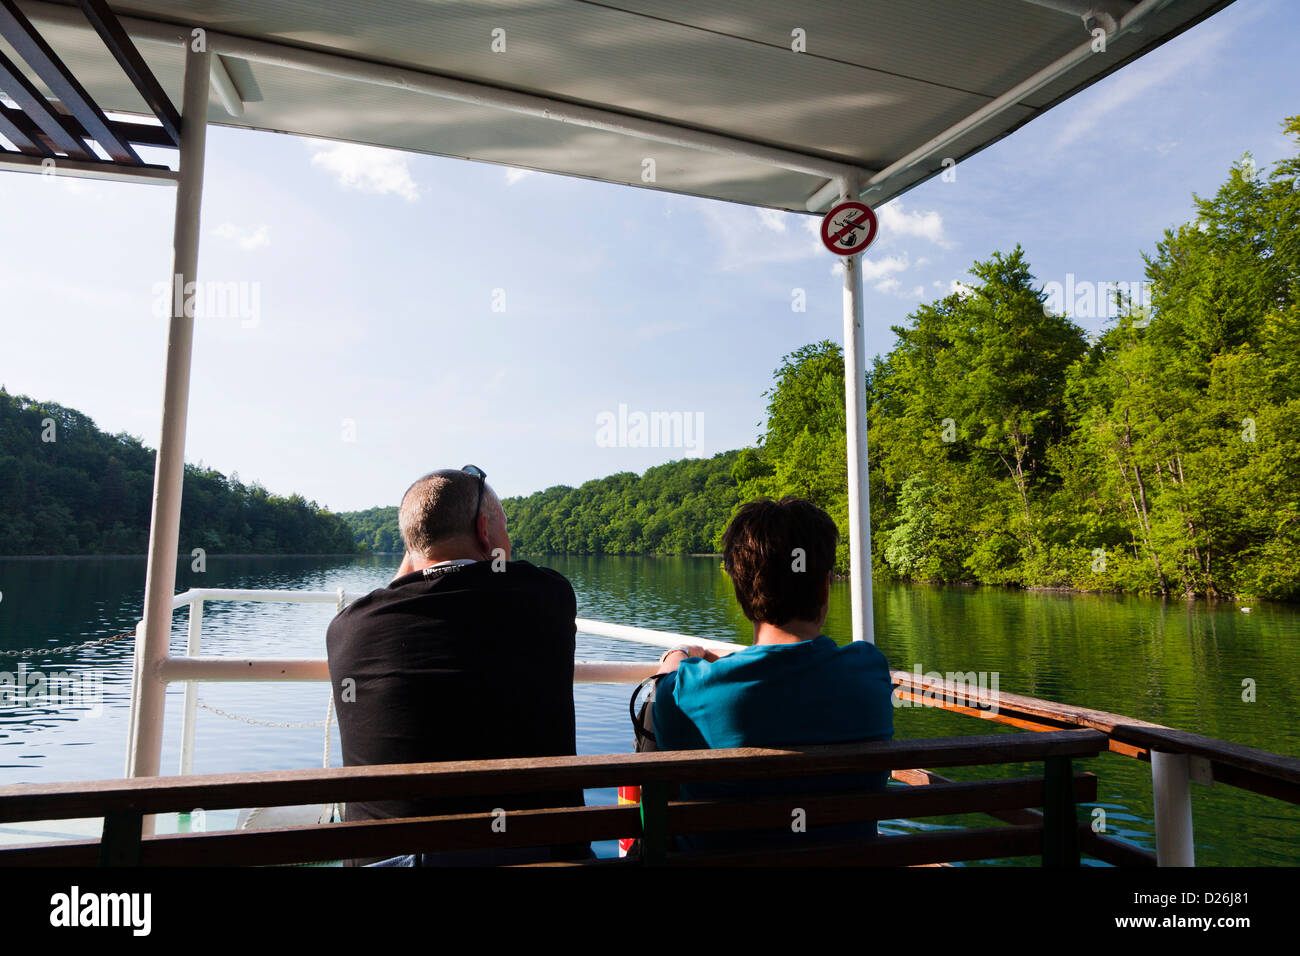 Les lacs de Plitvice dans le parc national Plitvicka Jezera. Les visiteurs qui prennent une croisière sur le lac Kozjak. L'Europe du Sud, Croatie Banque D'Images